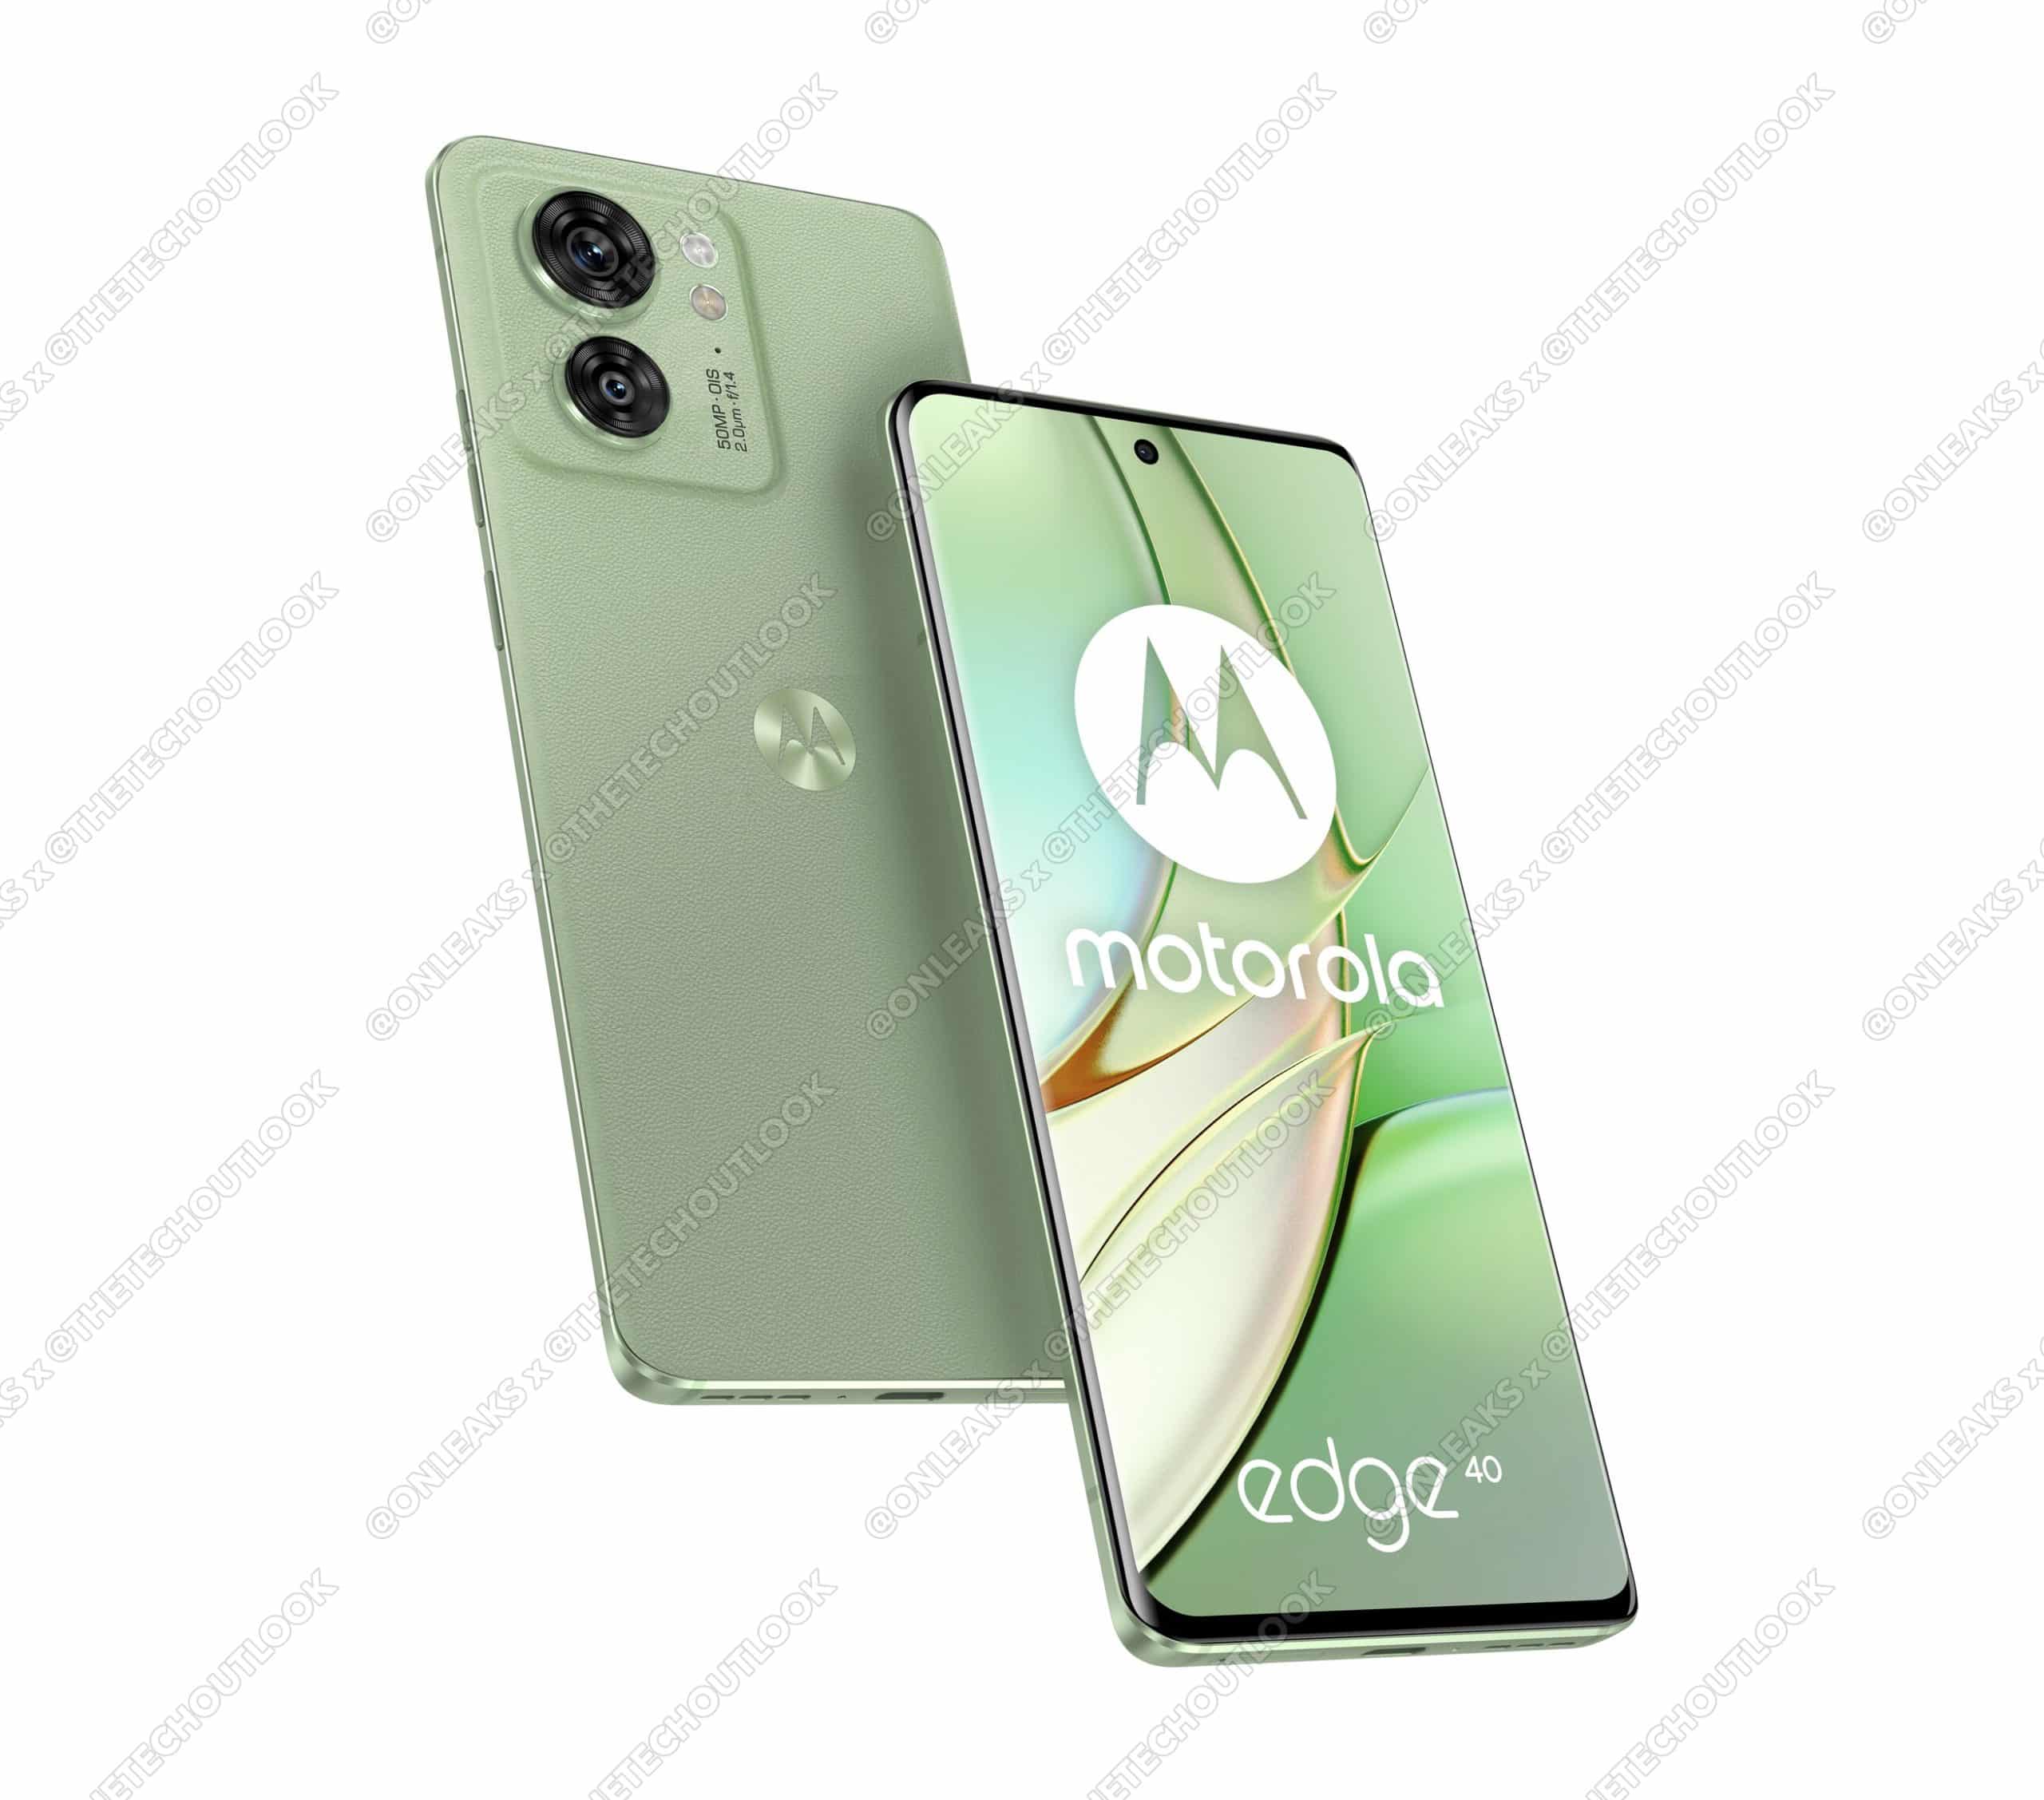 Oto jak będzie wyglądać Motorola Edge 40: nowy smartfon firmy z najwyższej półki z ekranem 144 Hz i układem MediaTek Dimensity 8020